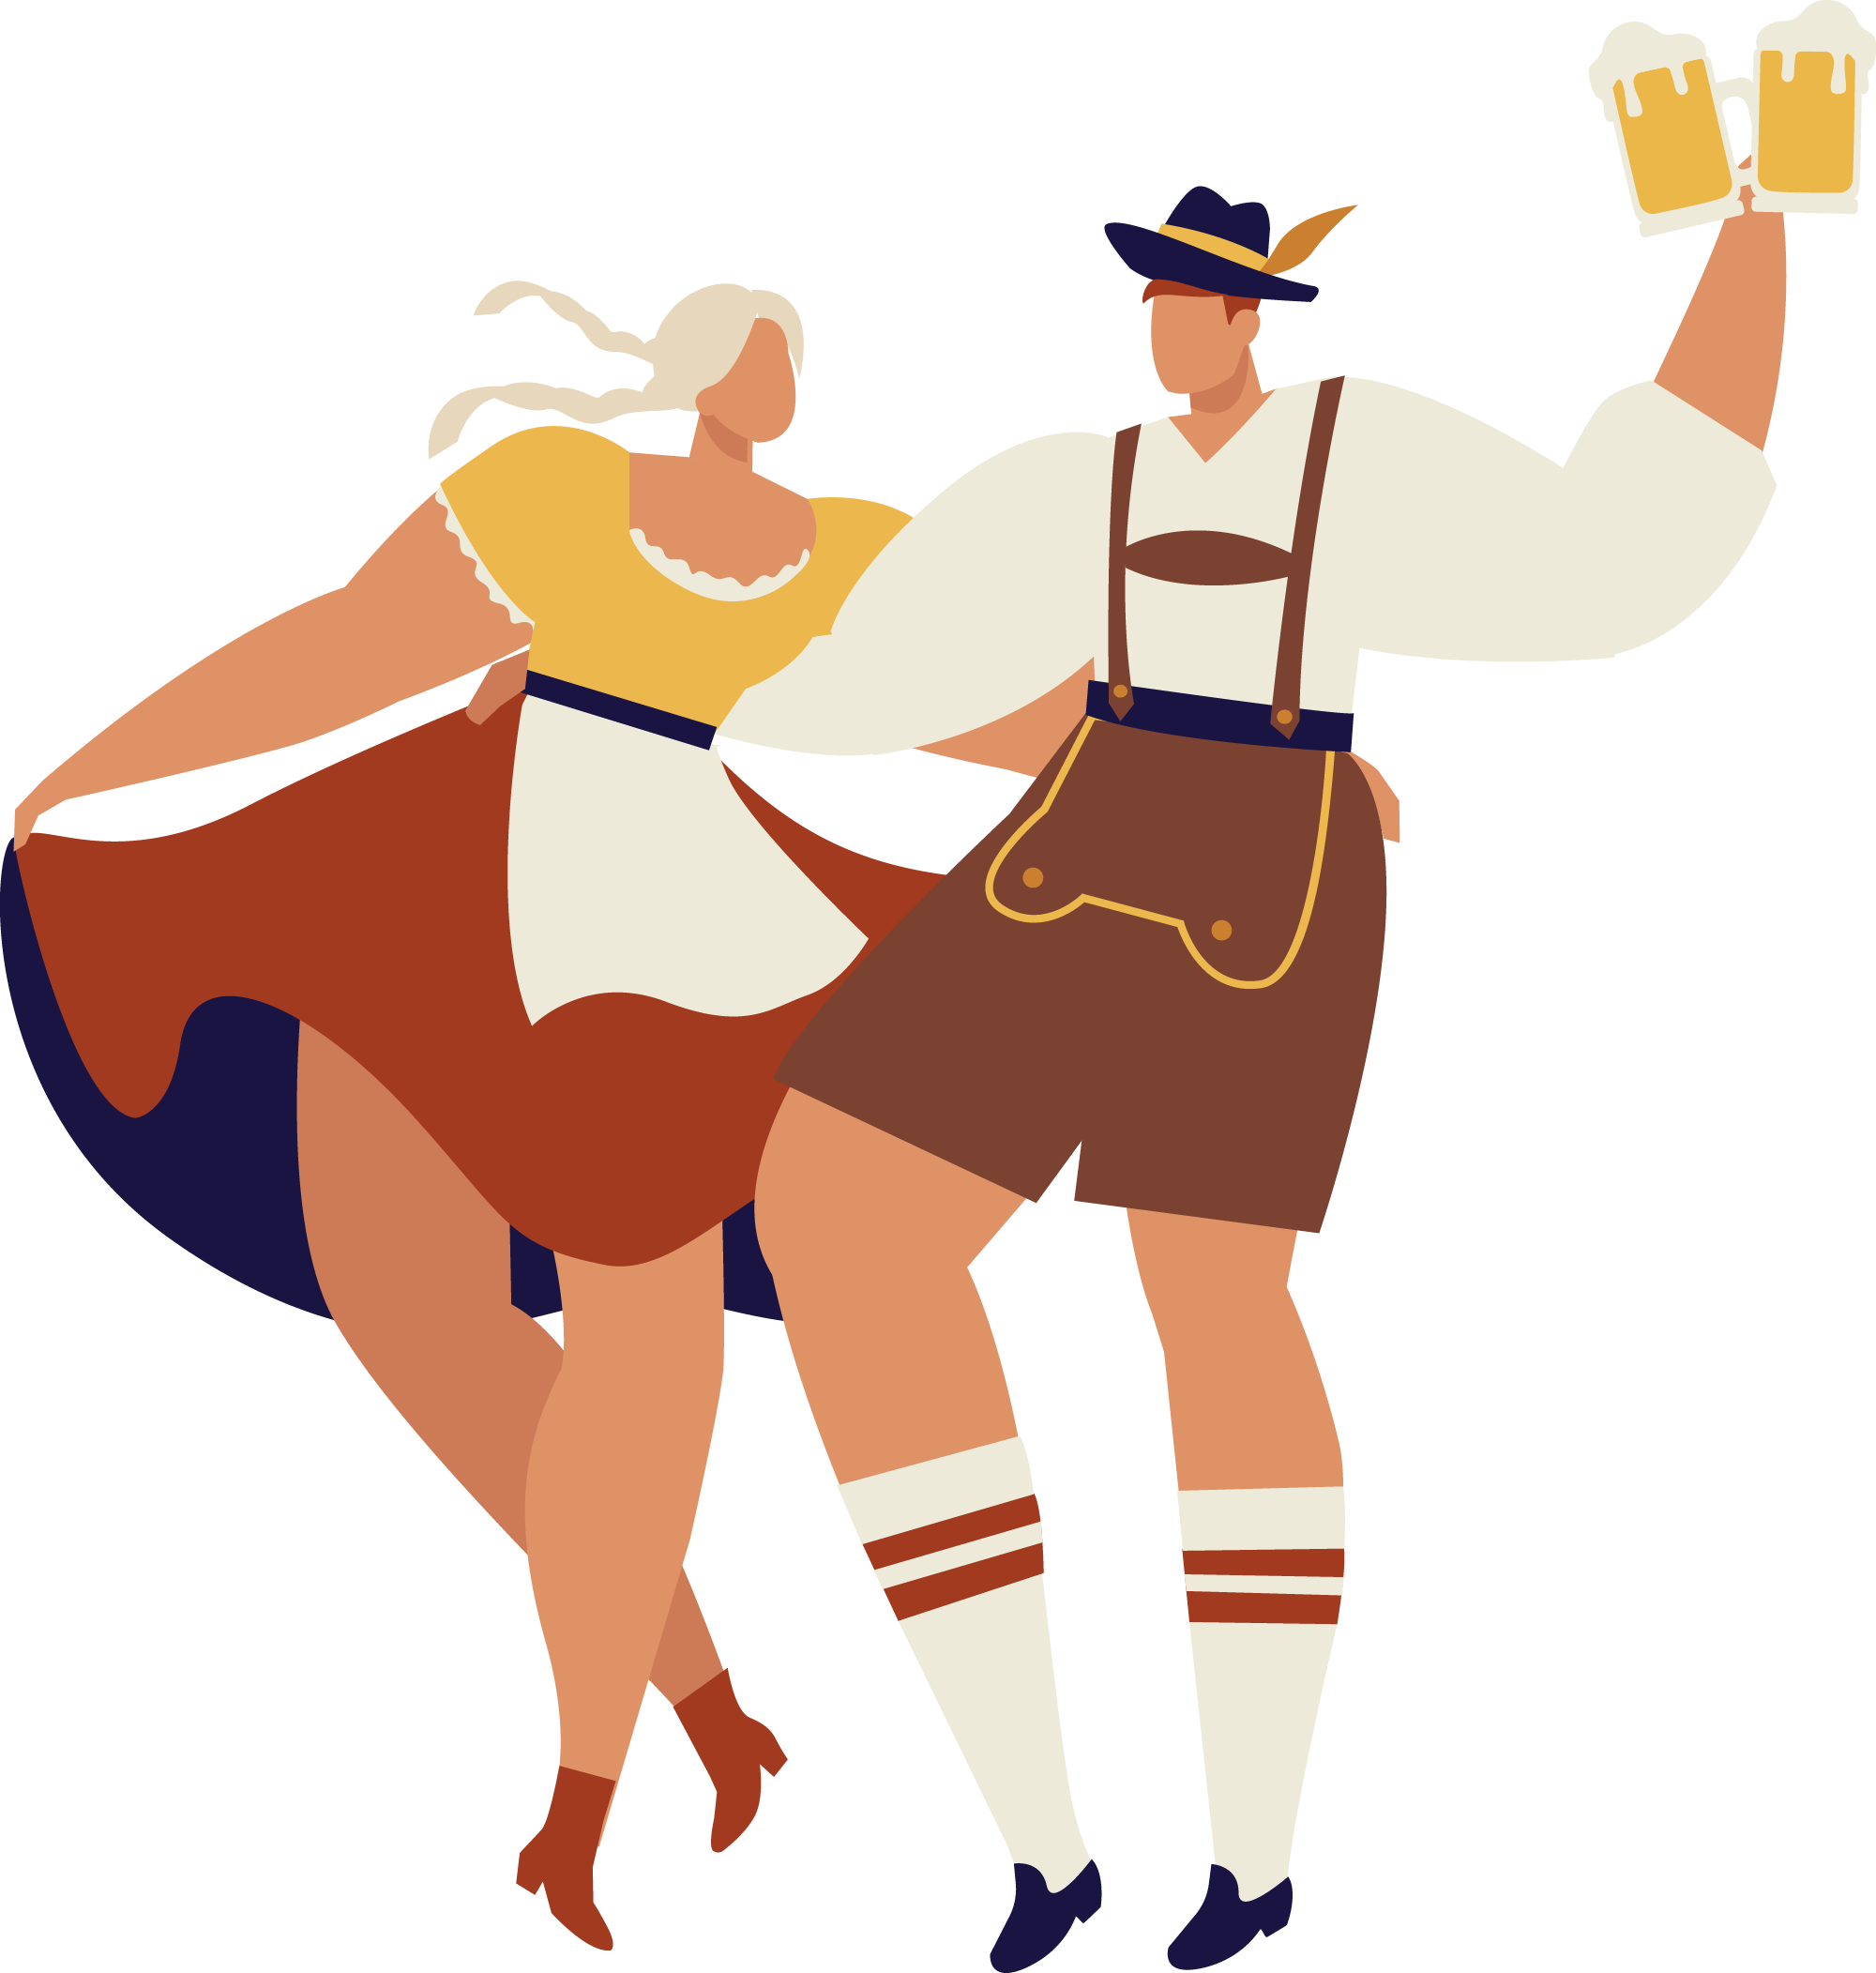 Tanzendes Päärchen, Illustration von Oktoberfestbesuchern in Tracht für unser Reservierungssystem für Gastronomie